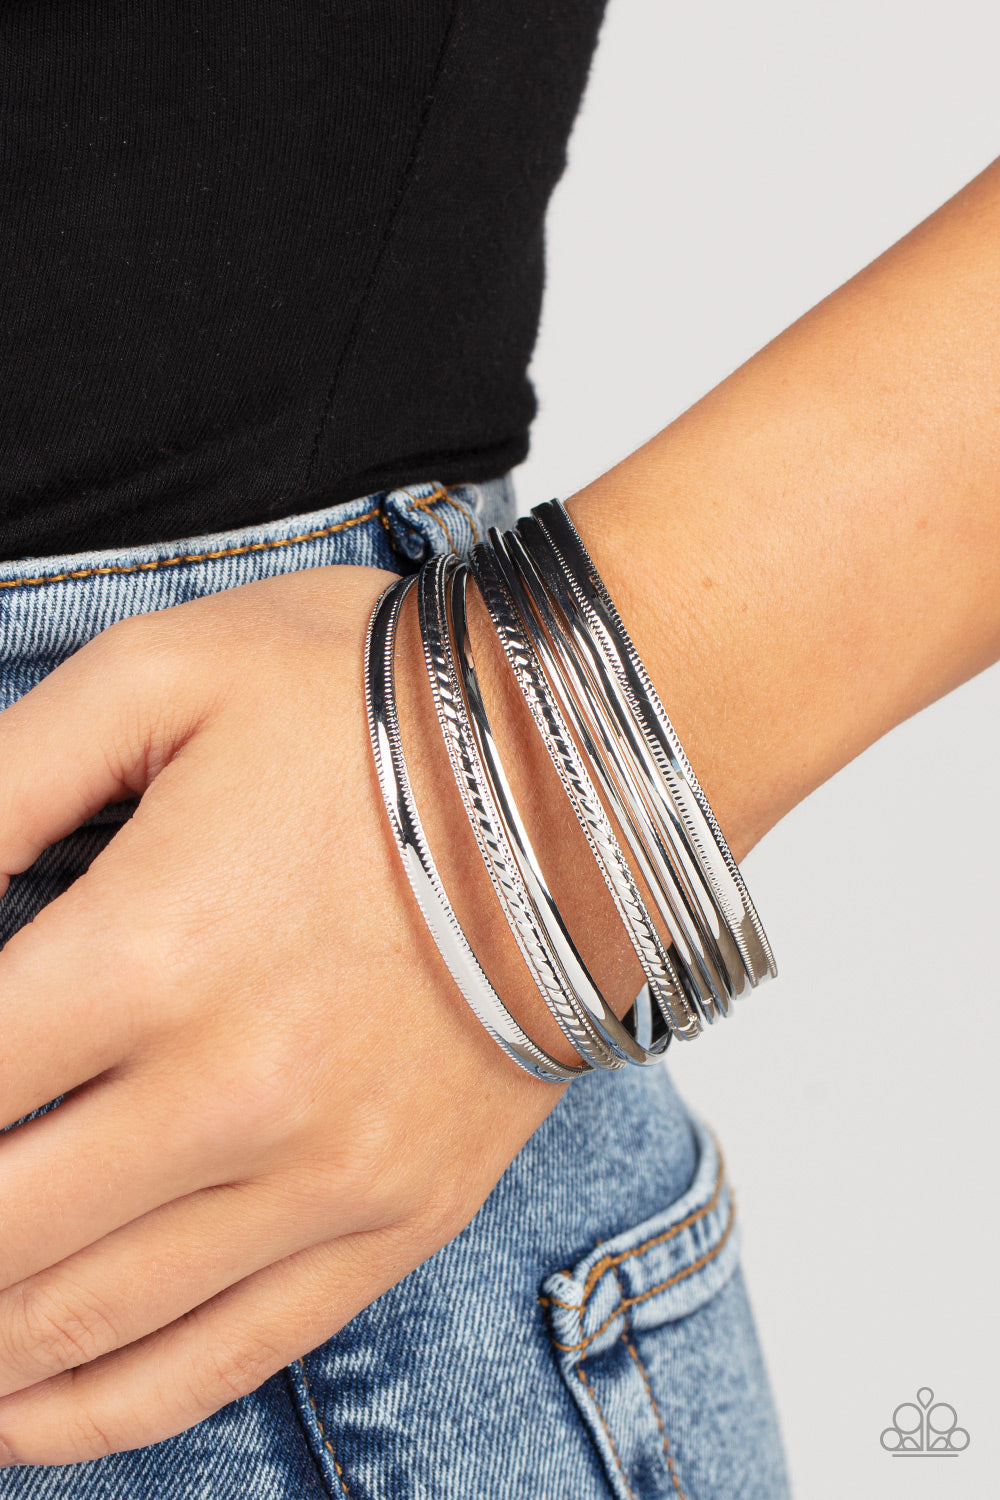 Stackable Shimmer - Silver Bracelet Bracelet